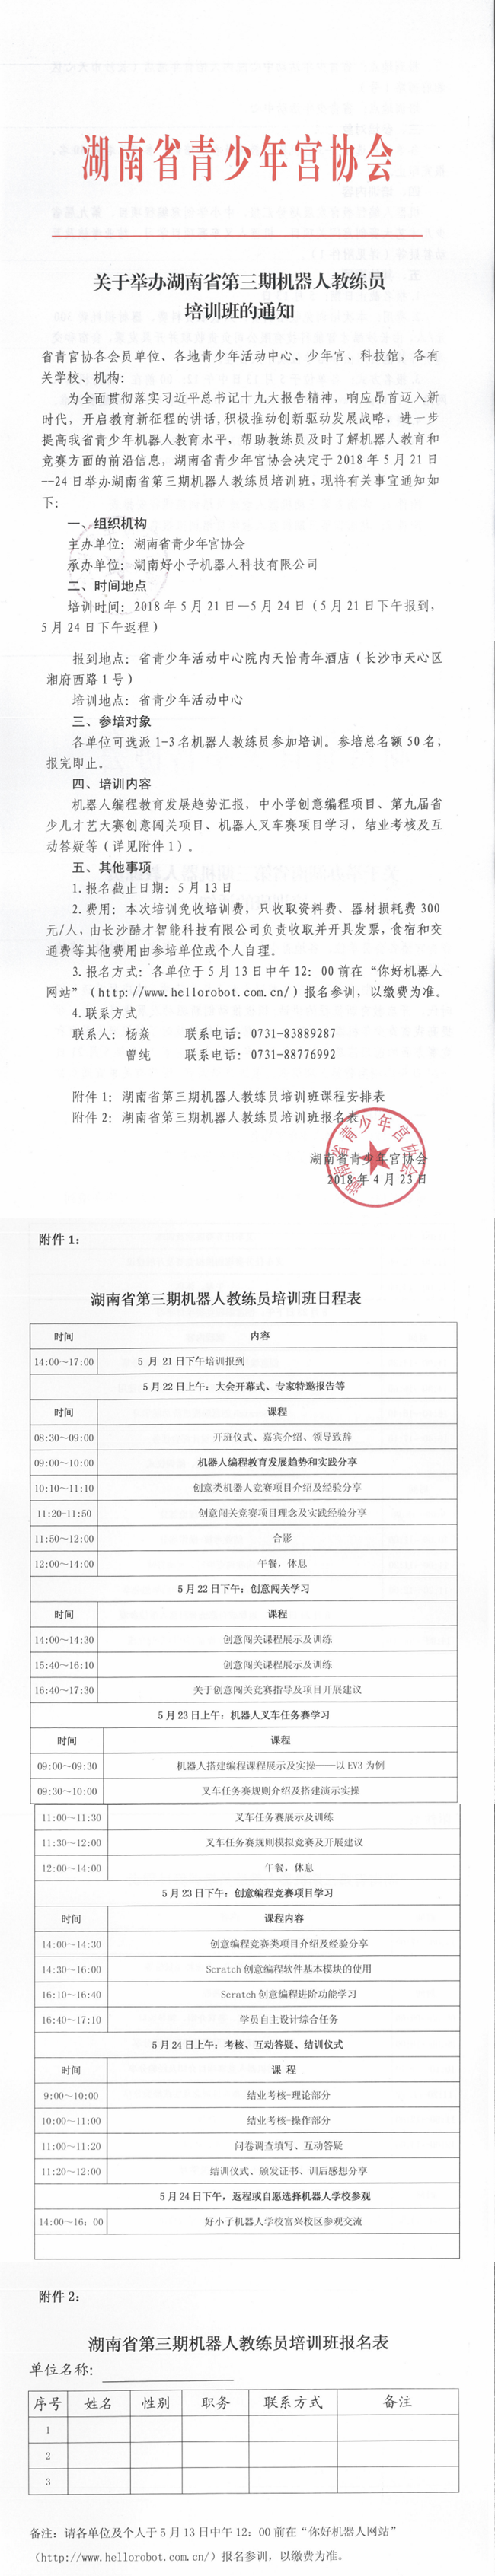 关于举办湖南省第三期机器人教练员培训班的通知_05_副本.png